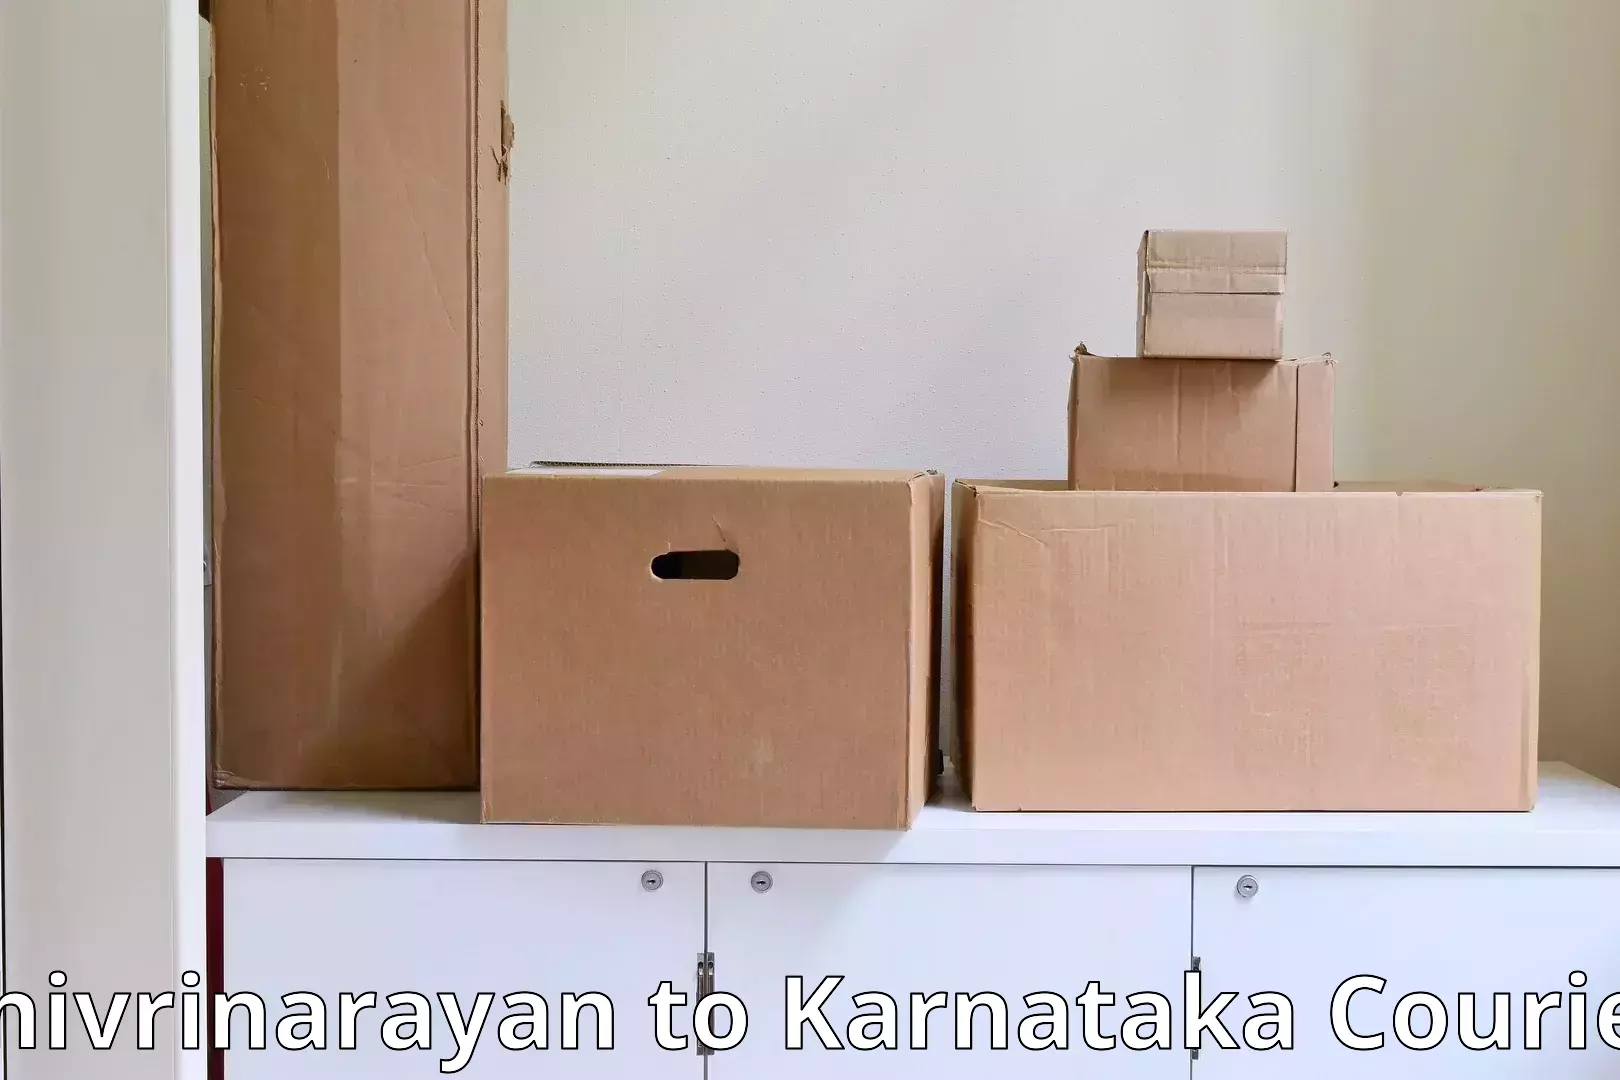 Professional packing services Shivrinarayan to Yelburga